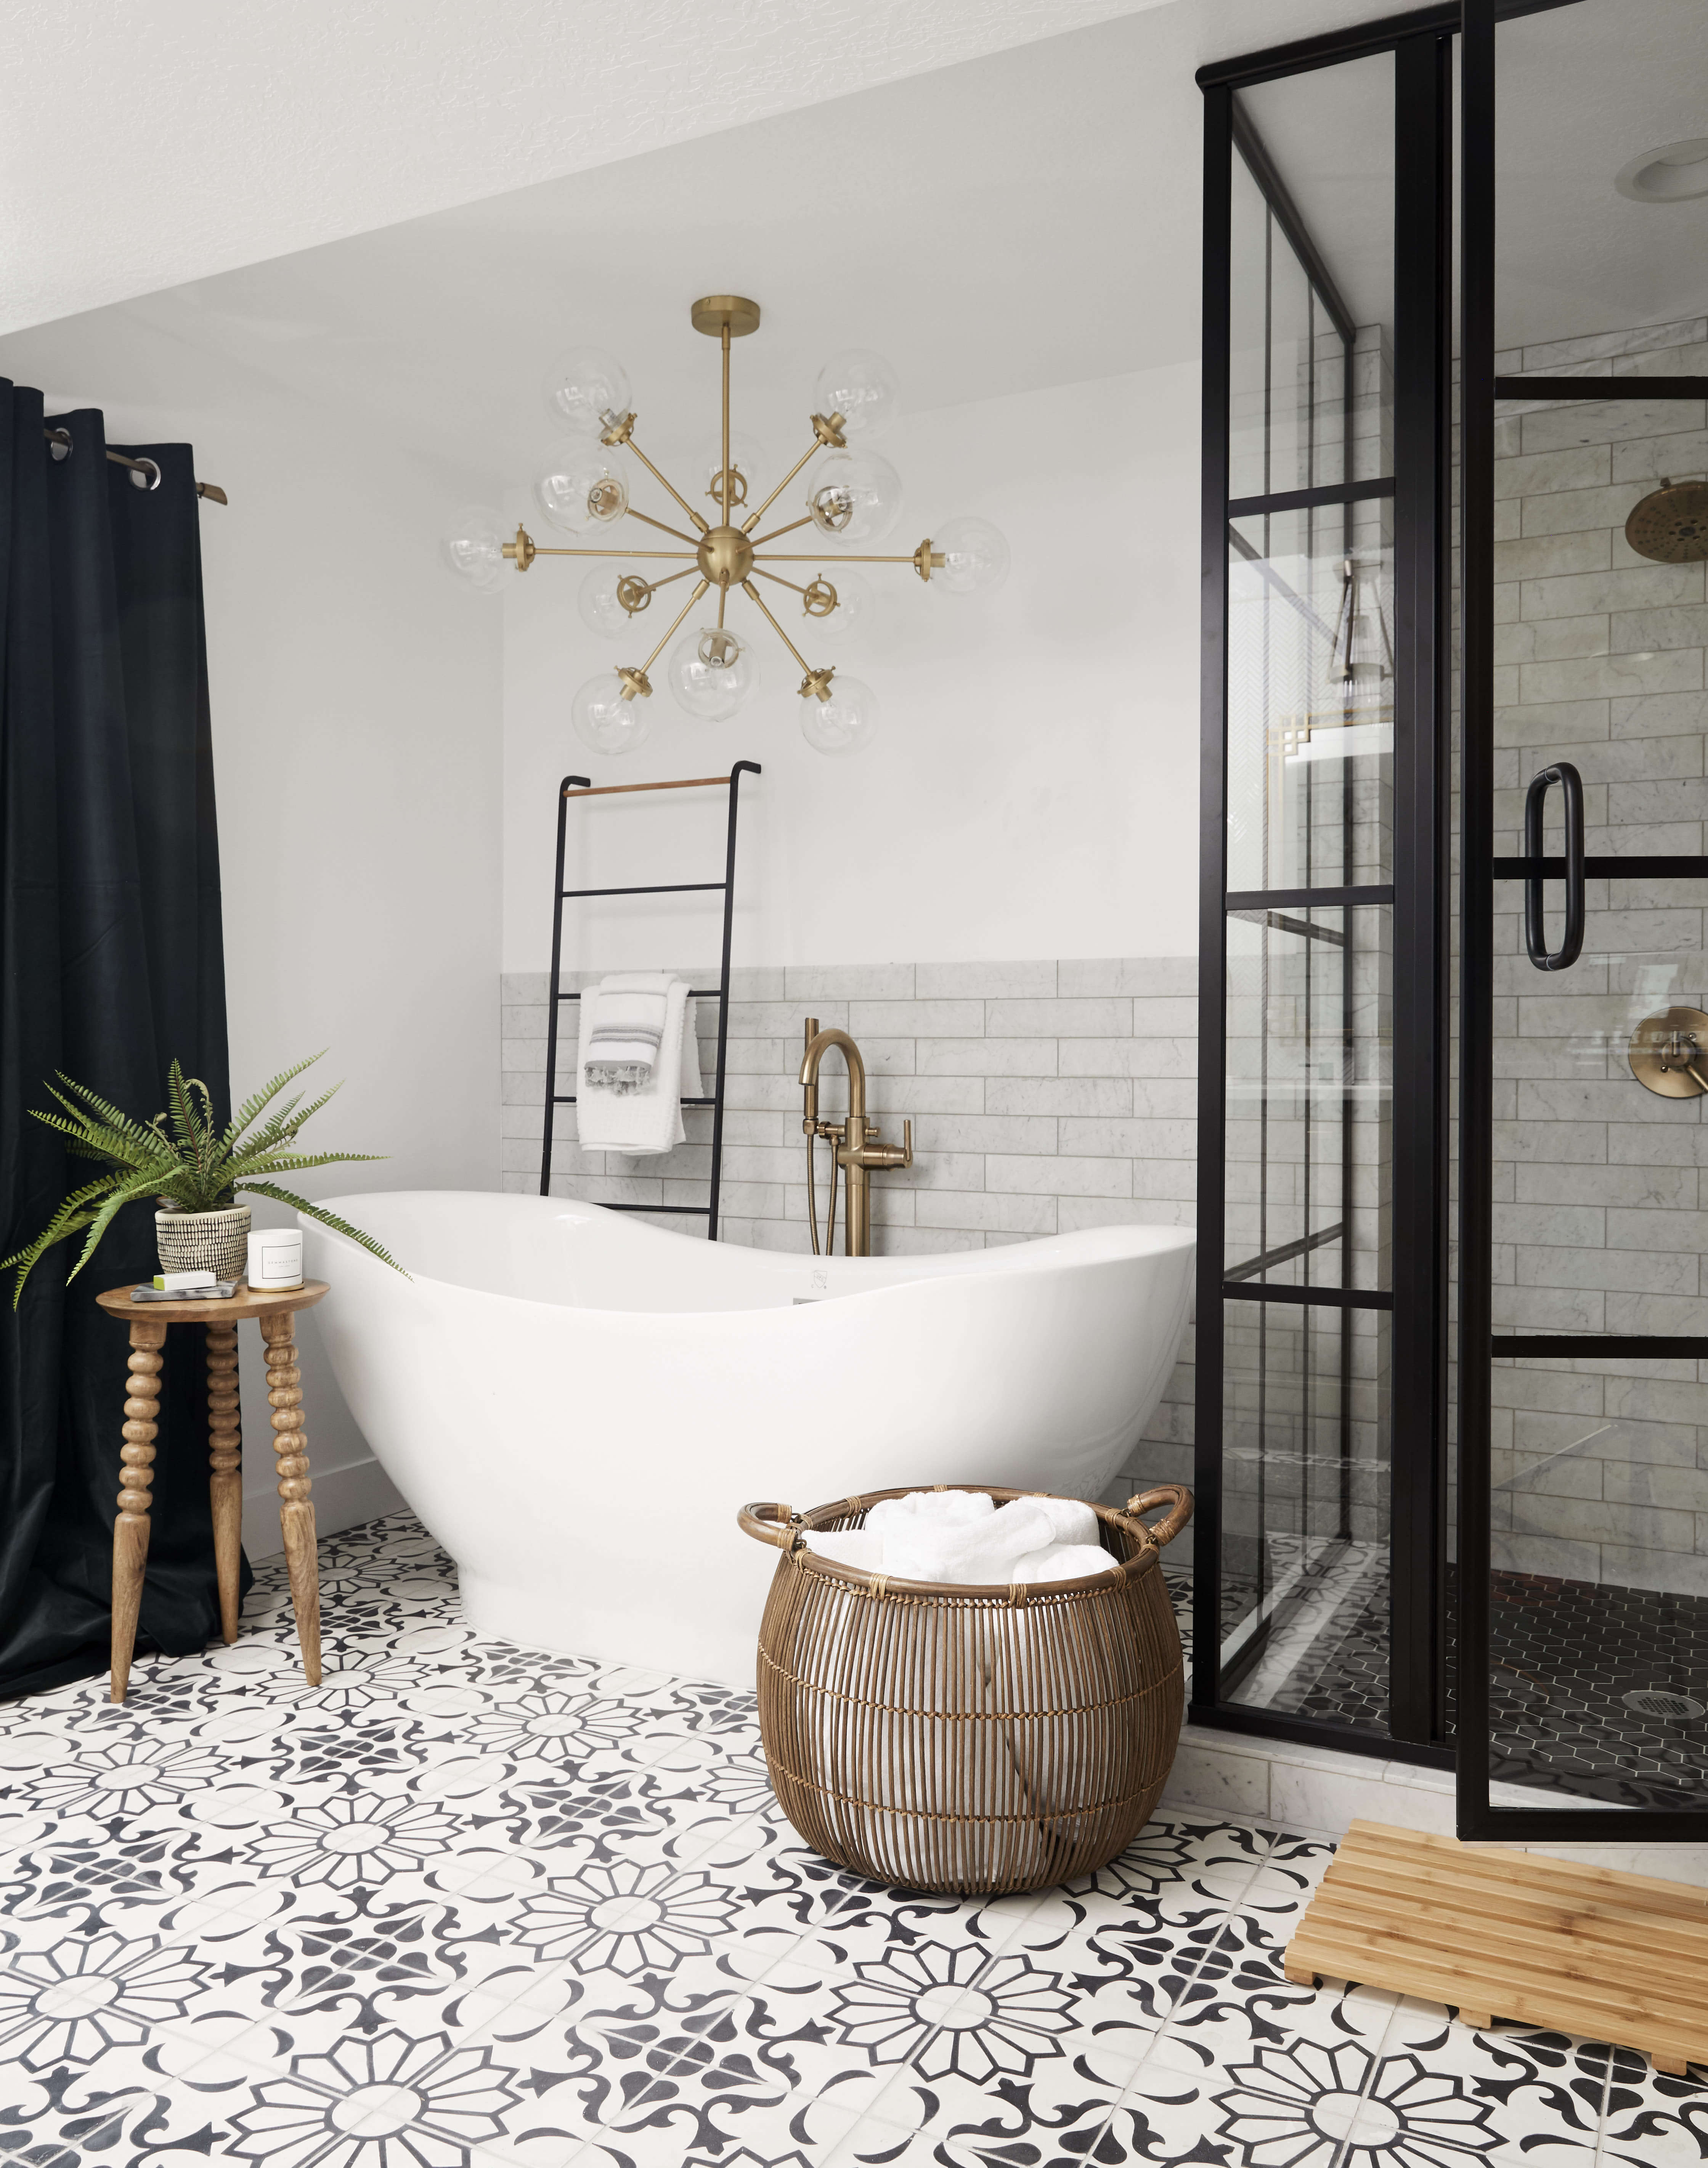 Tendencias en baños en 2019. Baños open concept integrados en las habitaciones.